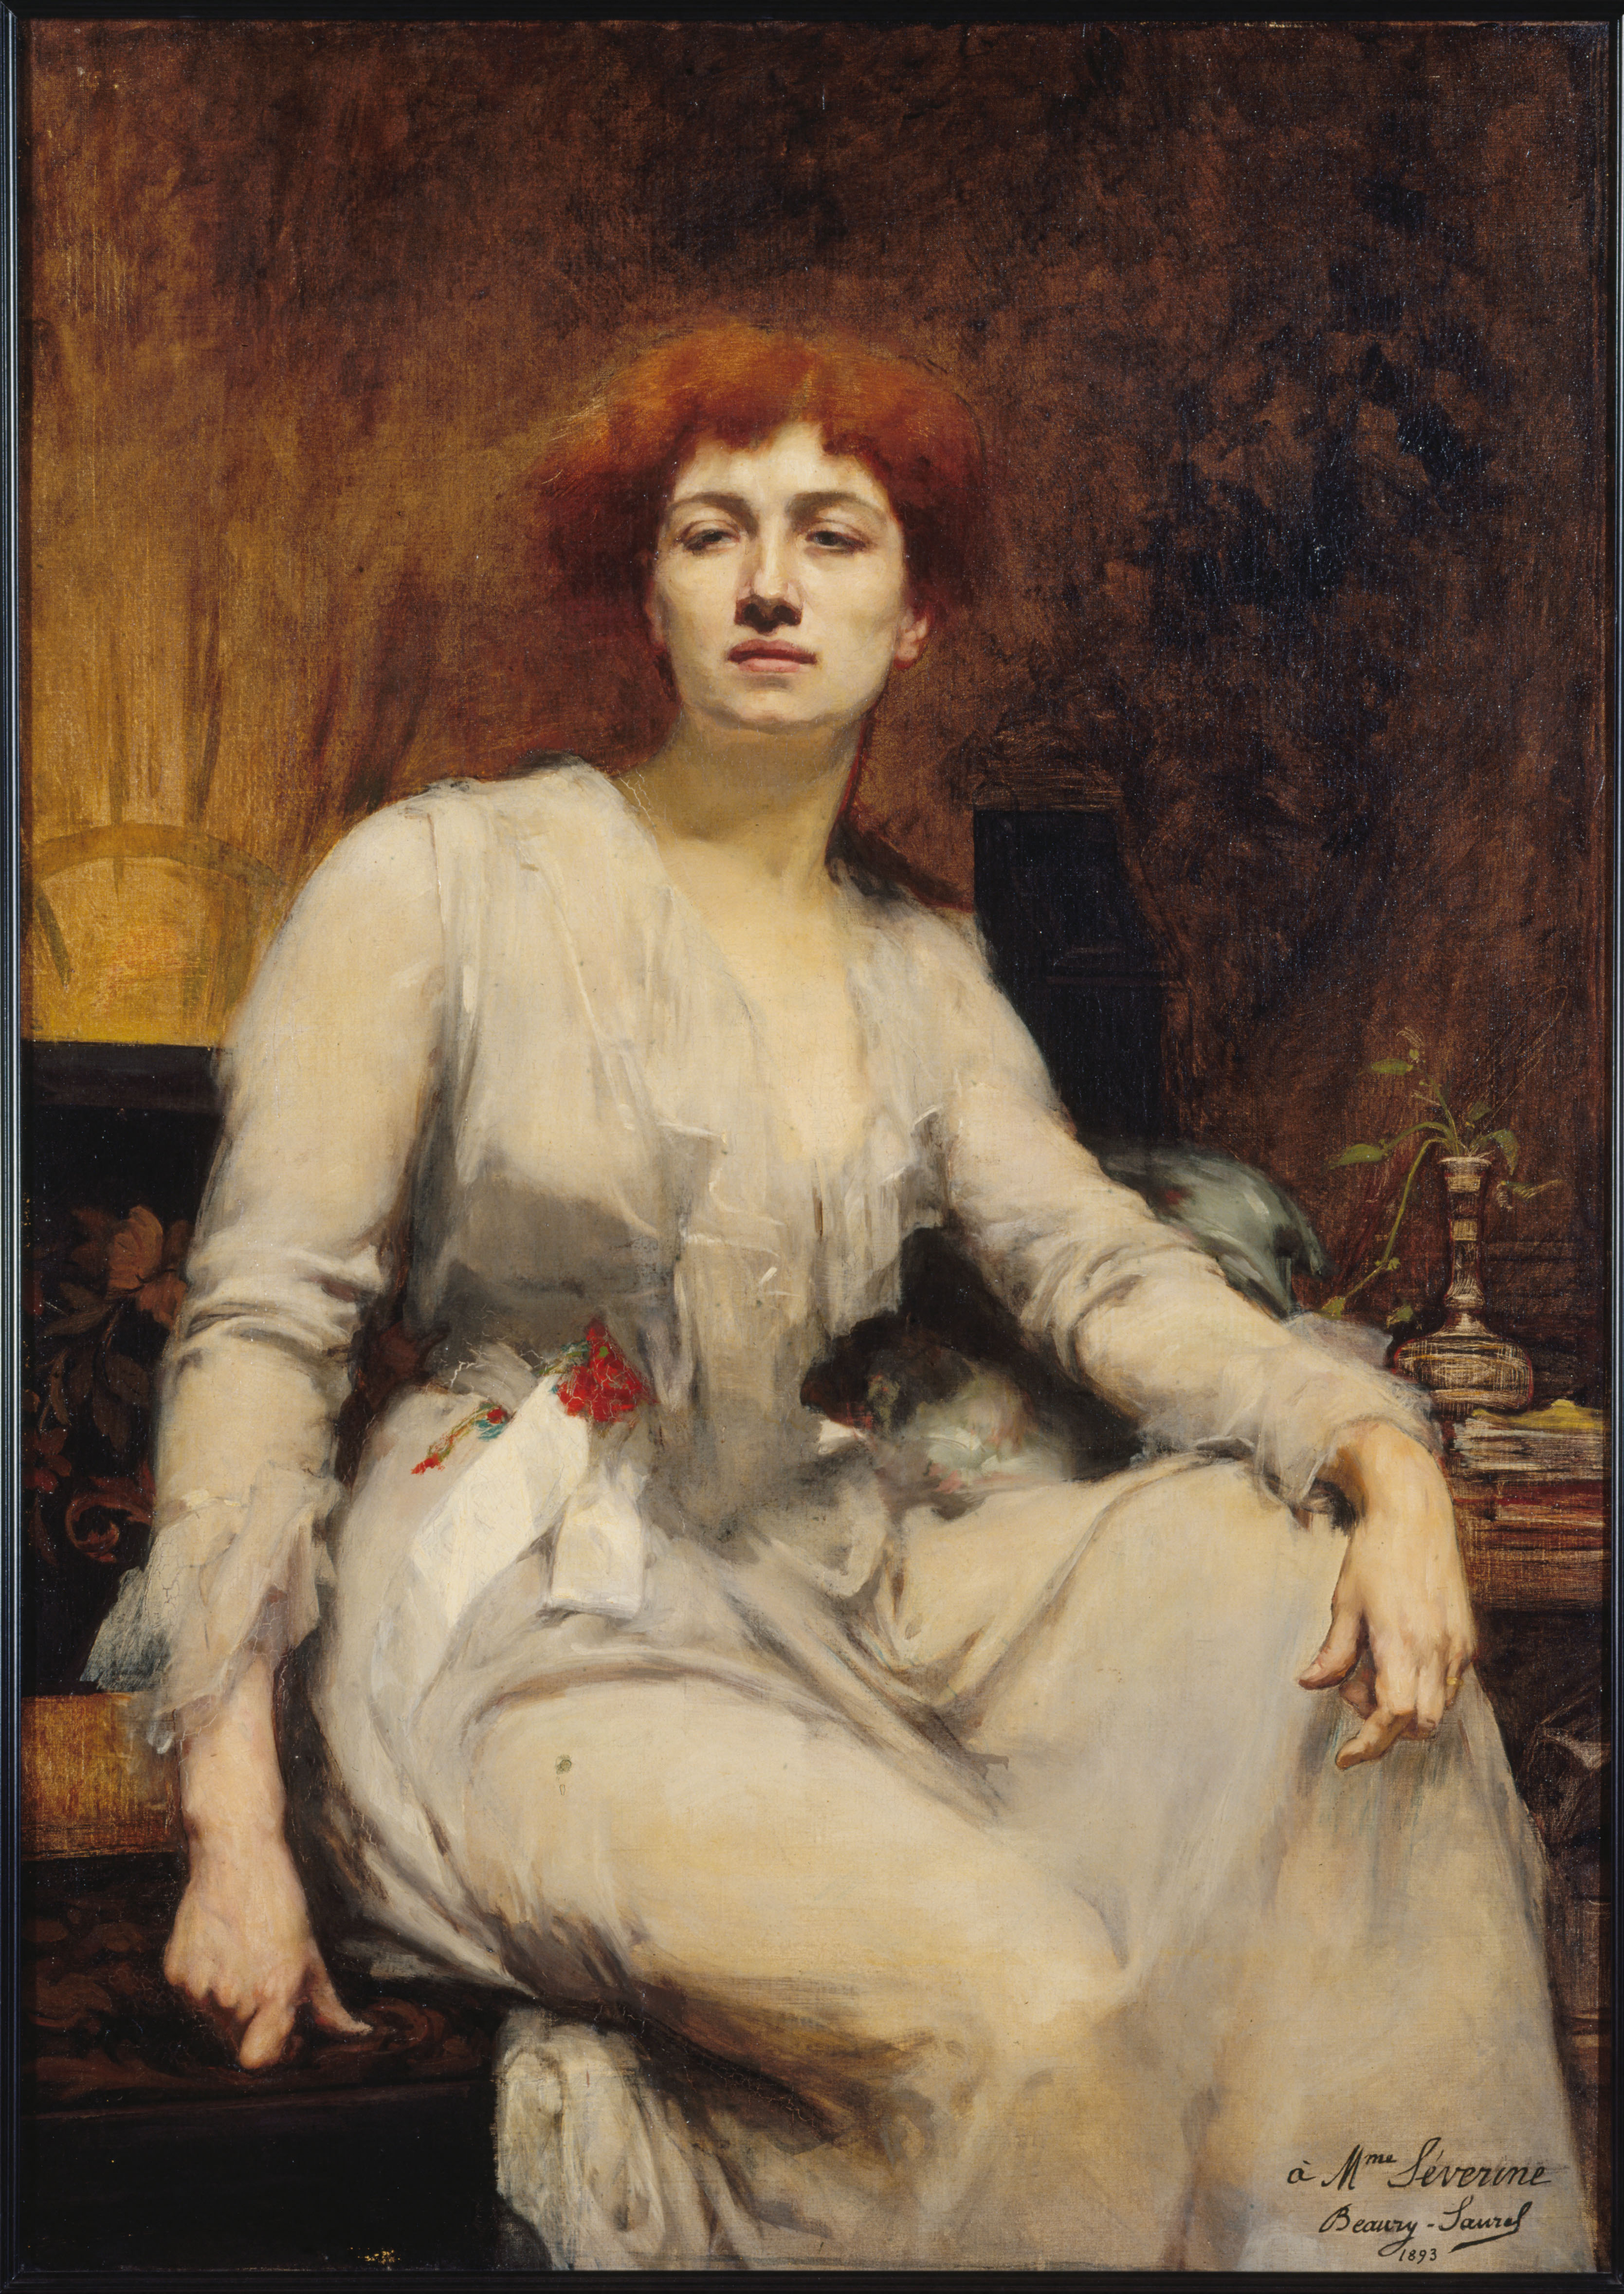 セヴリーヌ by Amélie Beaury-Saurel - 1893年 - 122.5 x 88 cm 